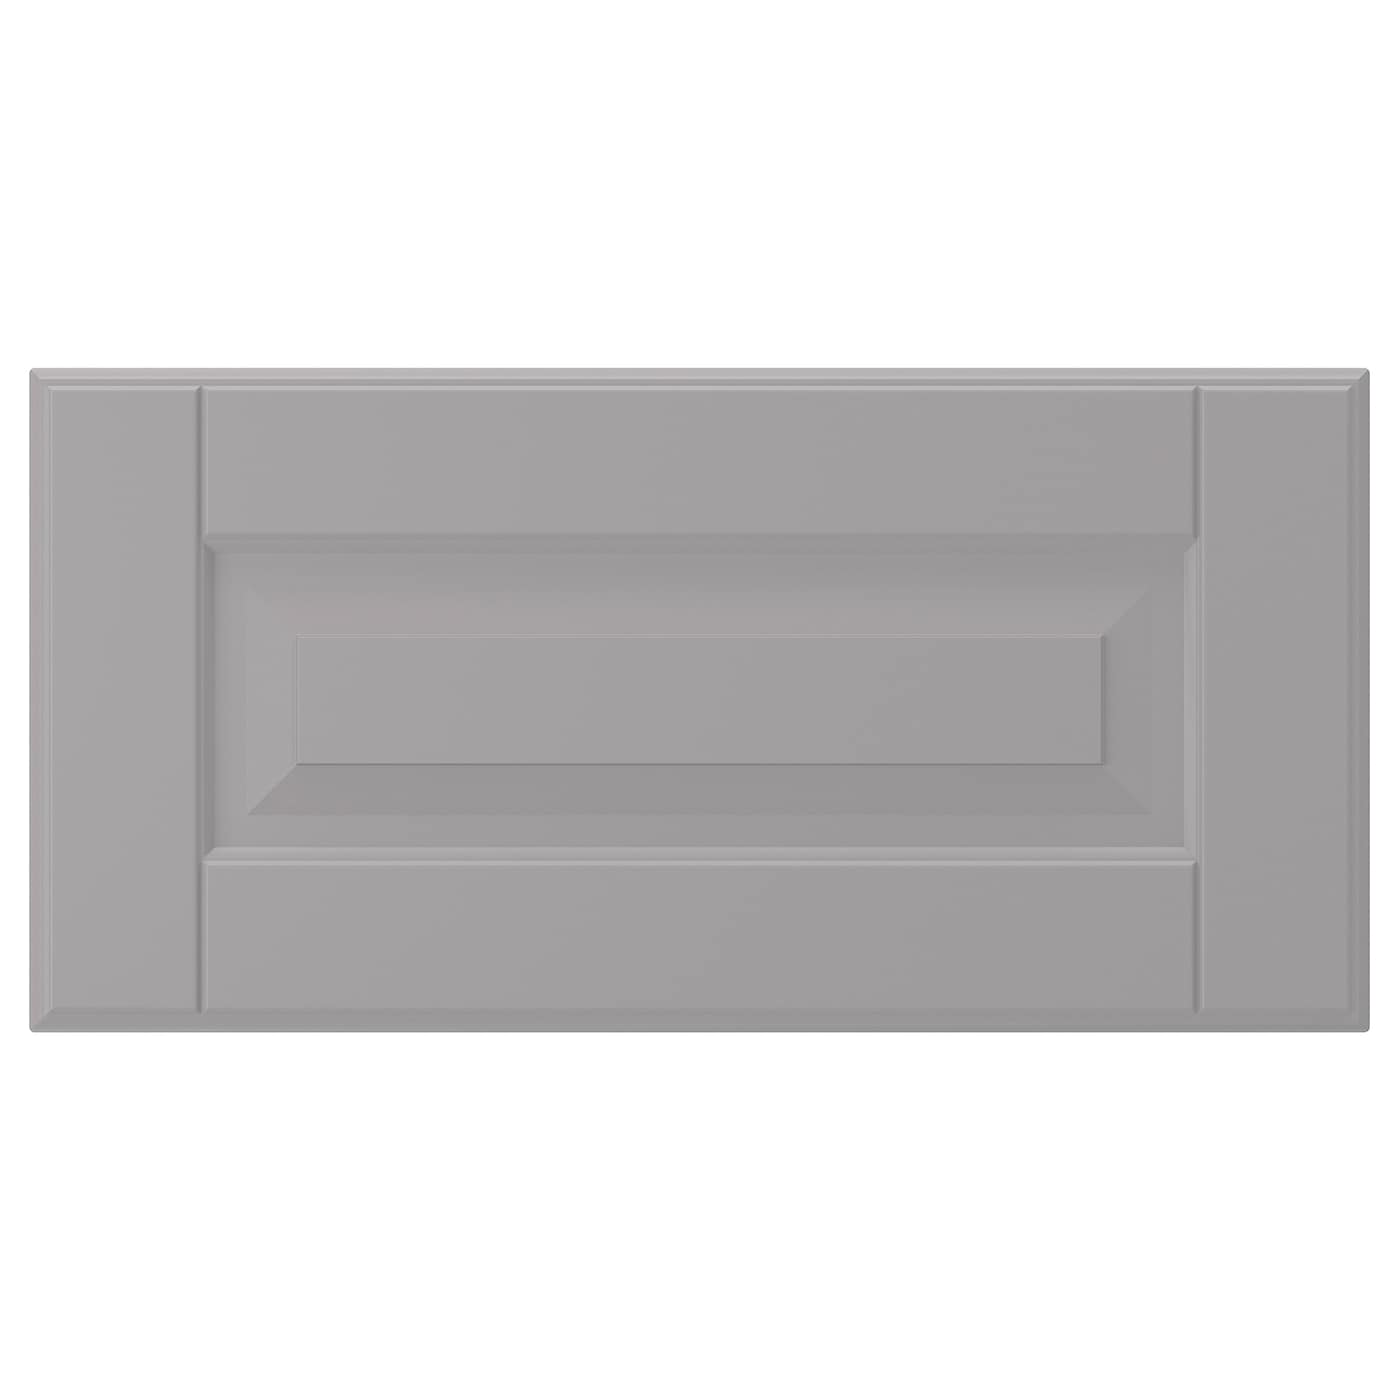 Фронтальная панель для ящика - IKEA BODBYN, 20х40 см, серый, БУДБИН ИКЕА